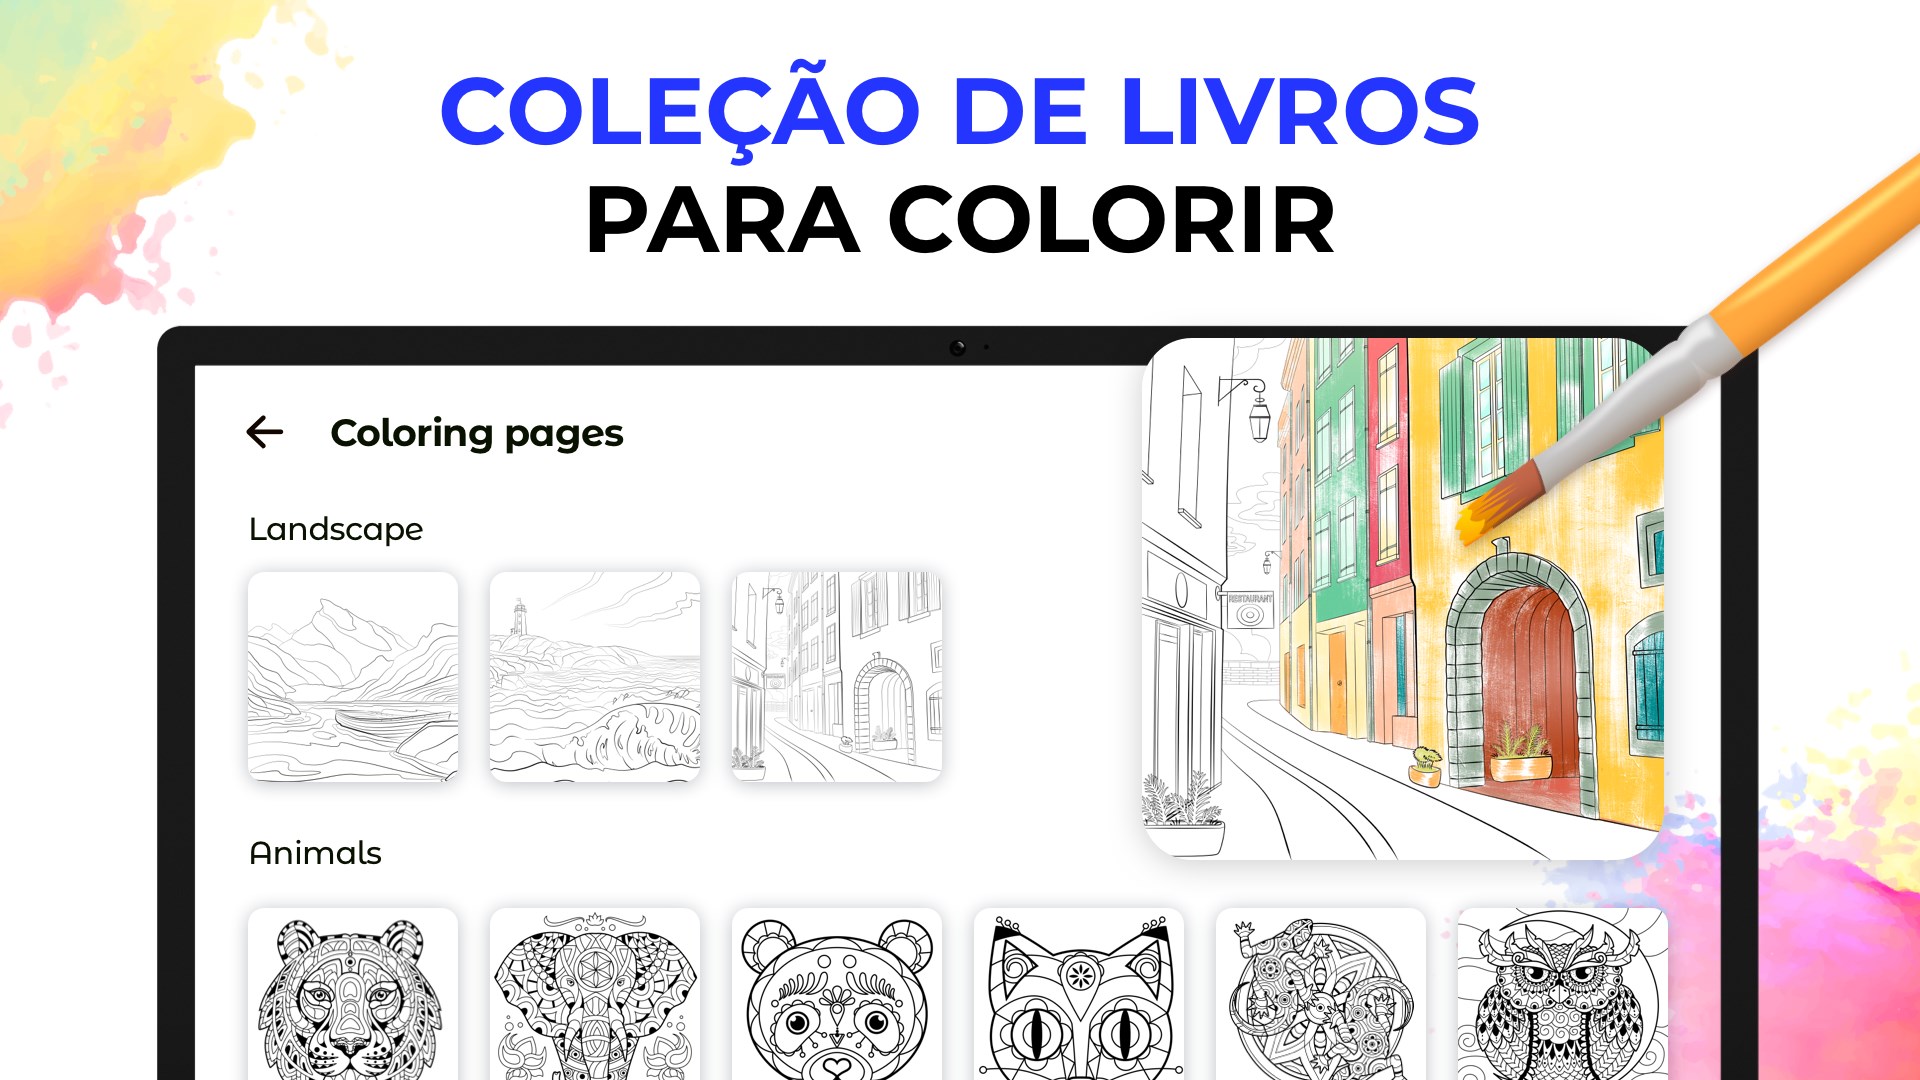 Obter Jogos de Colorir: Coloração, Pintura e Brilho - Microsoft Store pt-AO